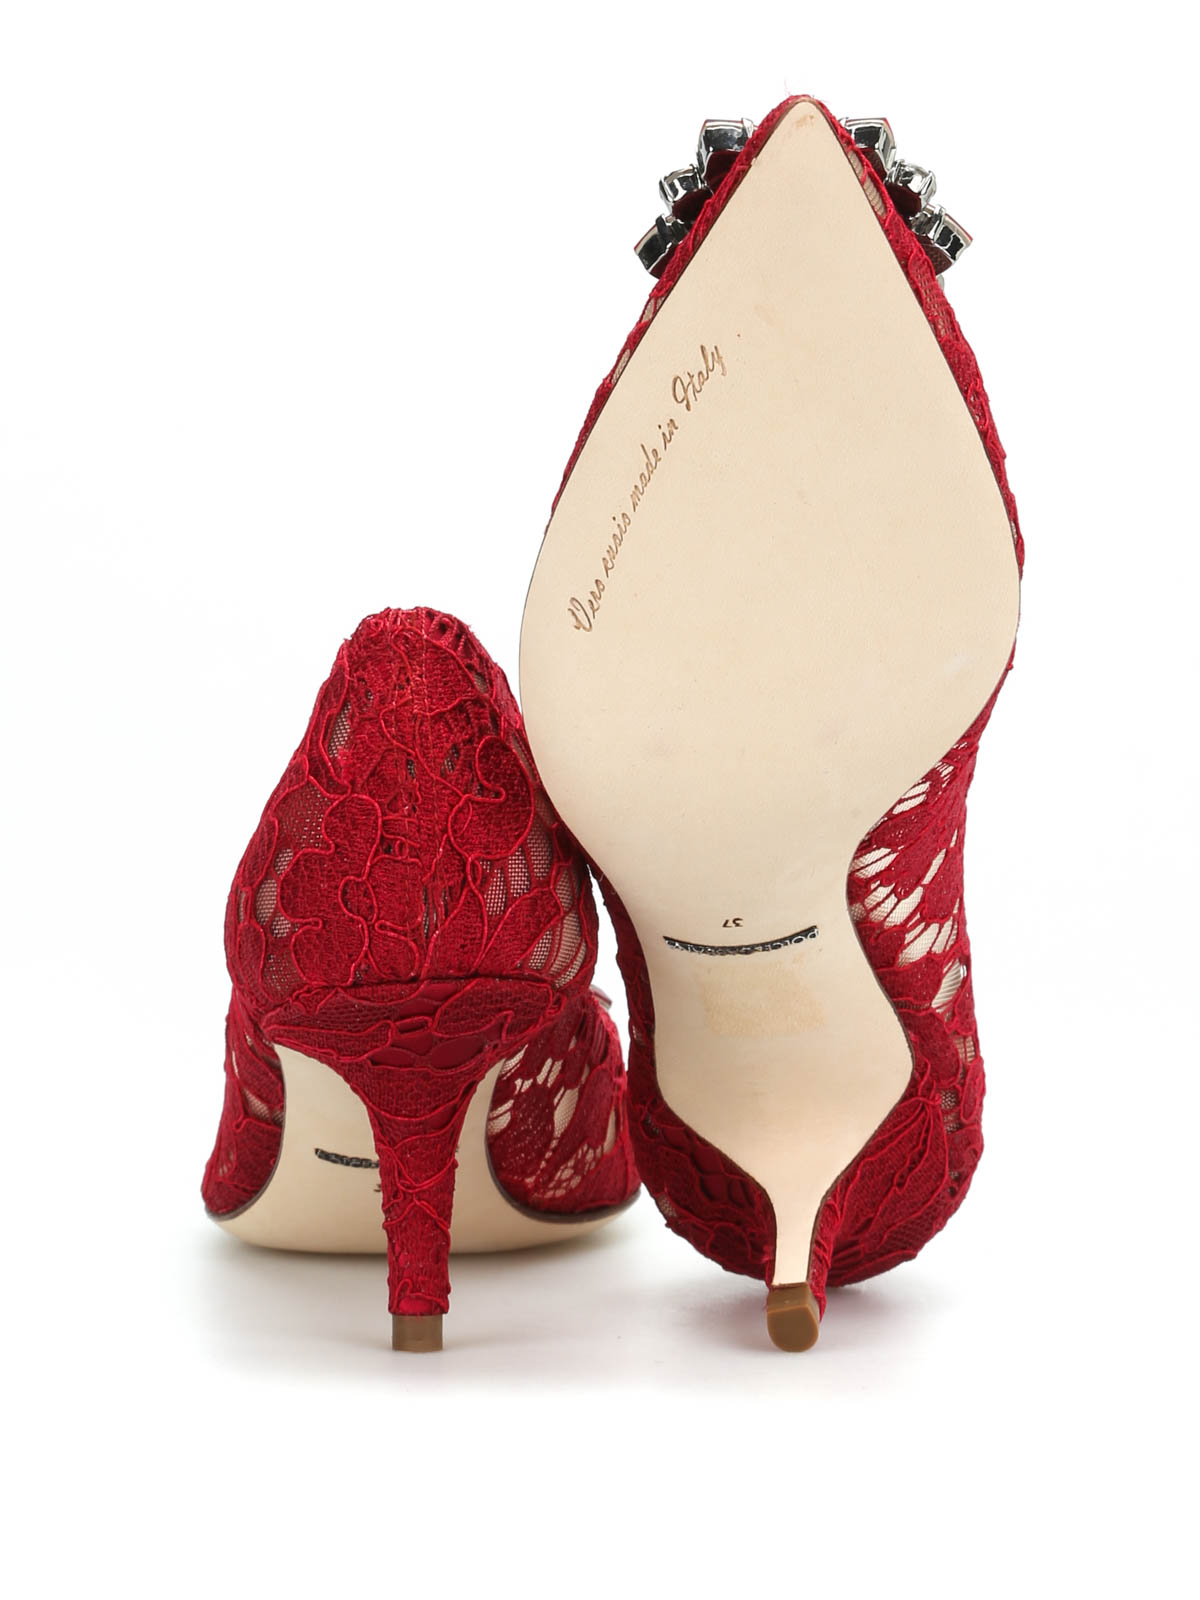 Shop Dolce & Gabbana Zapato De Salón Rojo Oscuro